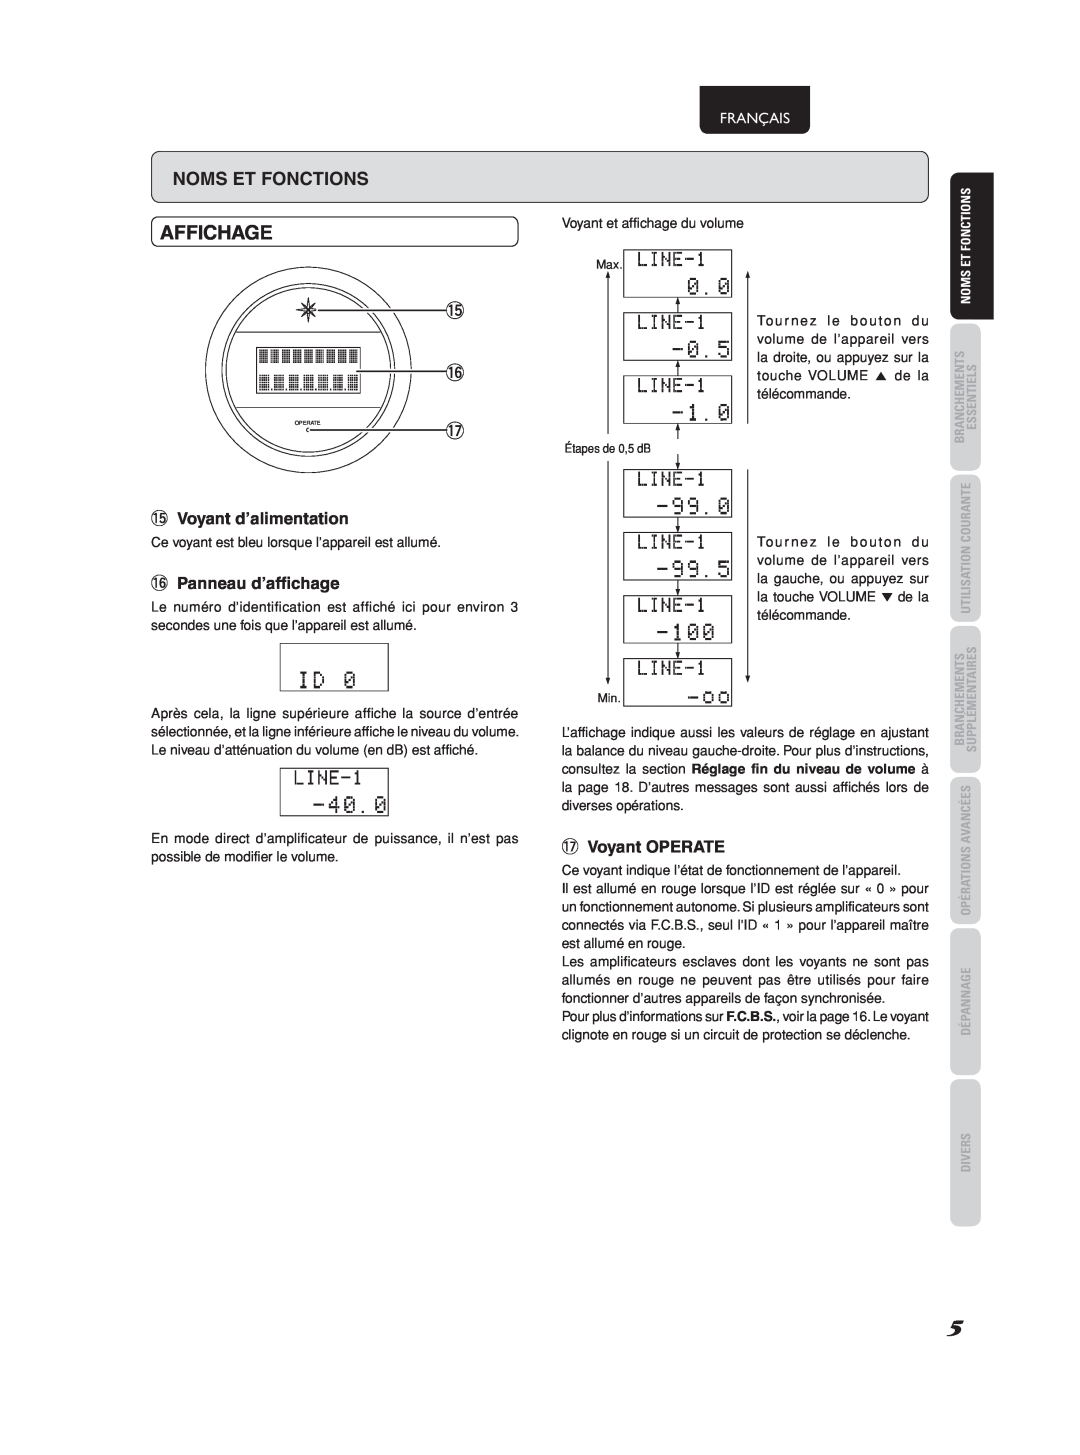 Marantz 541110275035M manual Affichage, 5Voyant d’alimentation, 6Panneau d’affichage, 7Voyant OPERATE, Français 